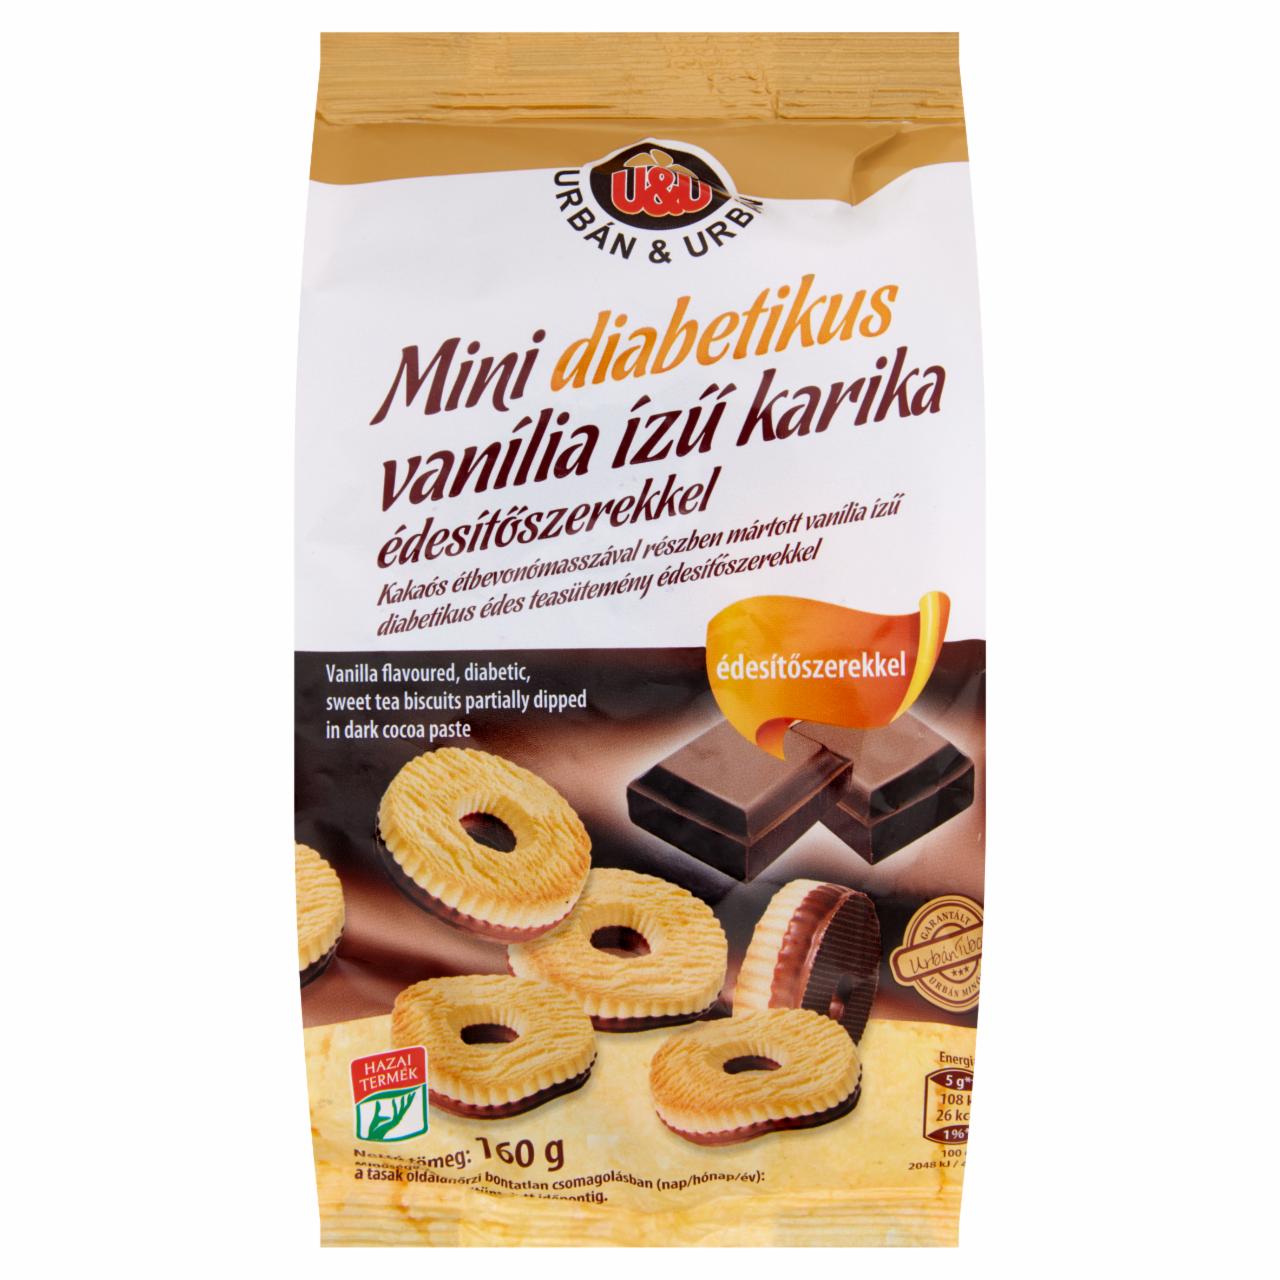 Képek - Urbán & Urbán mini diabetikus vanília ízű karika édesítőszerekkel 160 g